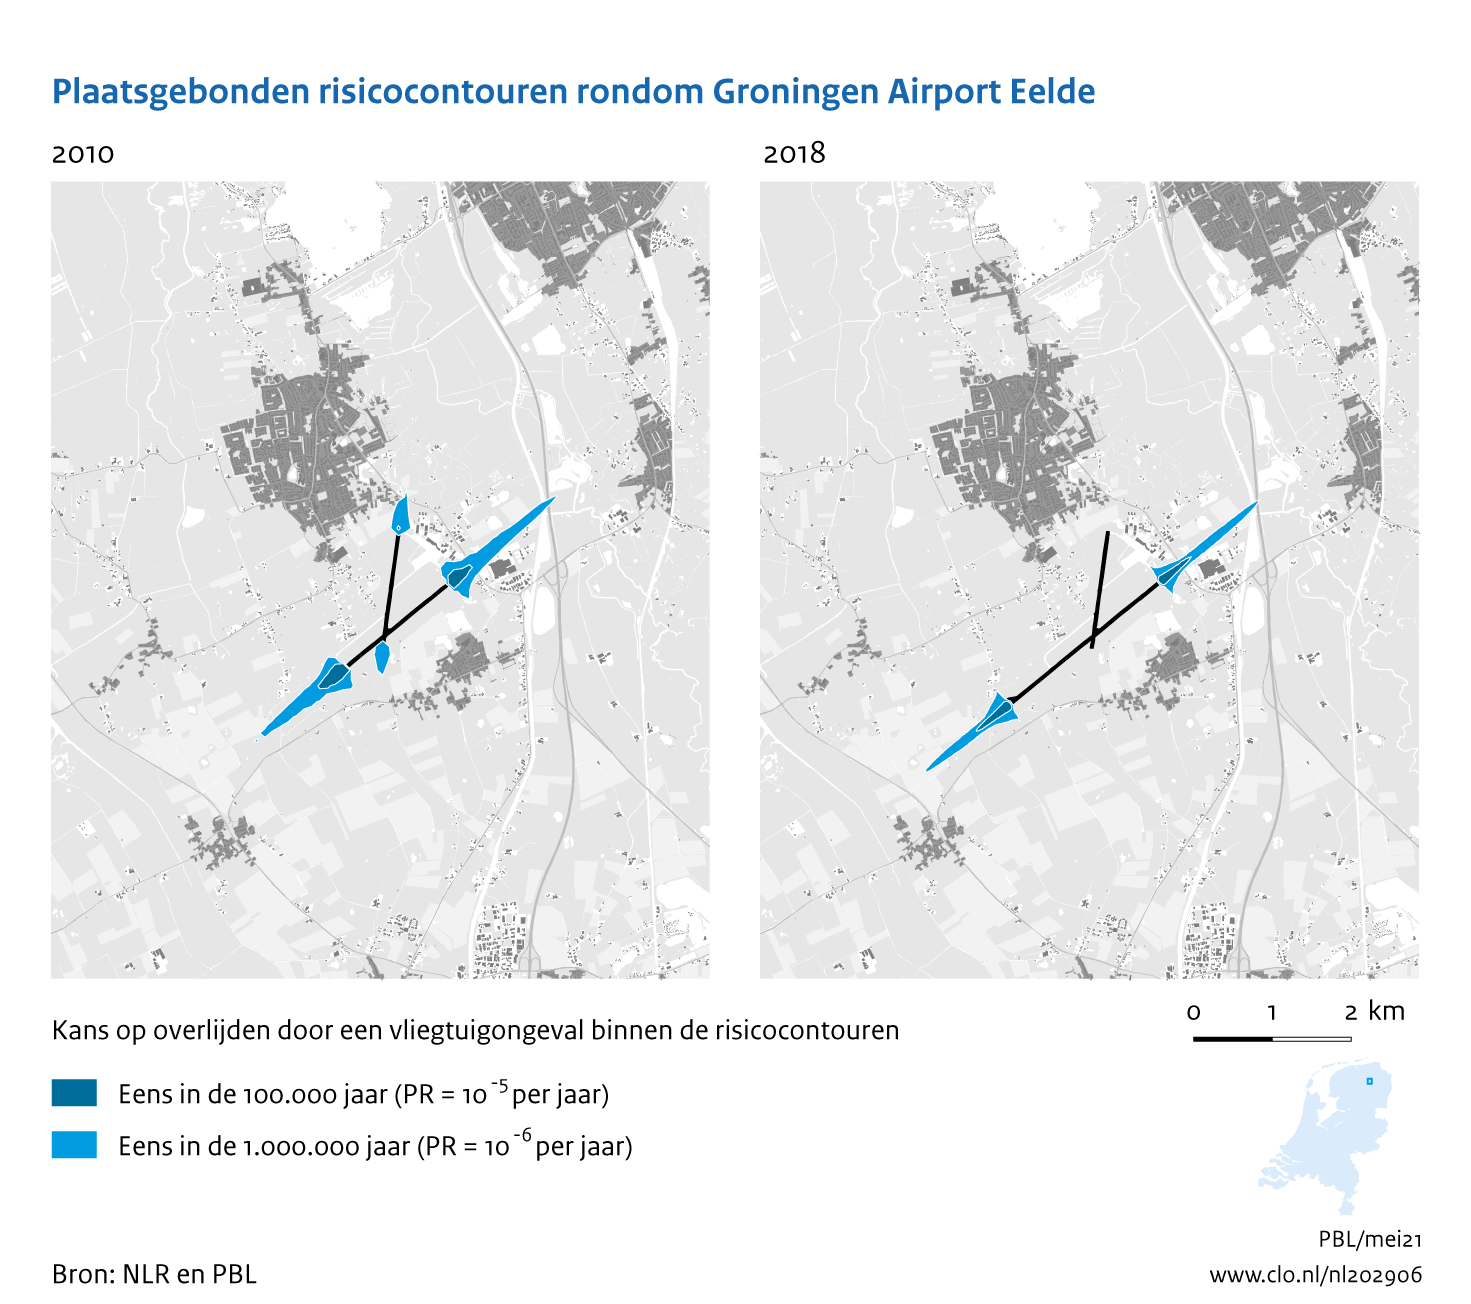 Figuur Plaatsgebonden risicocontouren rondom Groningen Airport Eelde, 2010-2018. In de rest van de tekst wordt deze figuur uitgebreider uitgelegd.